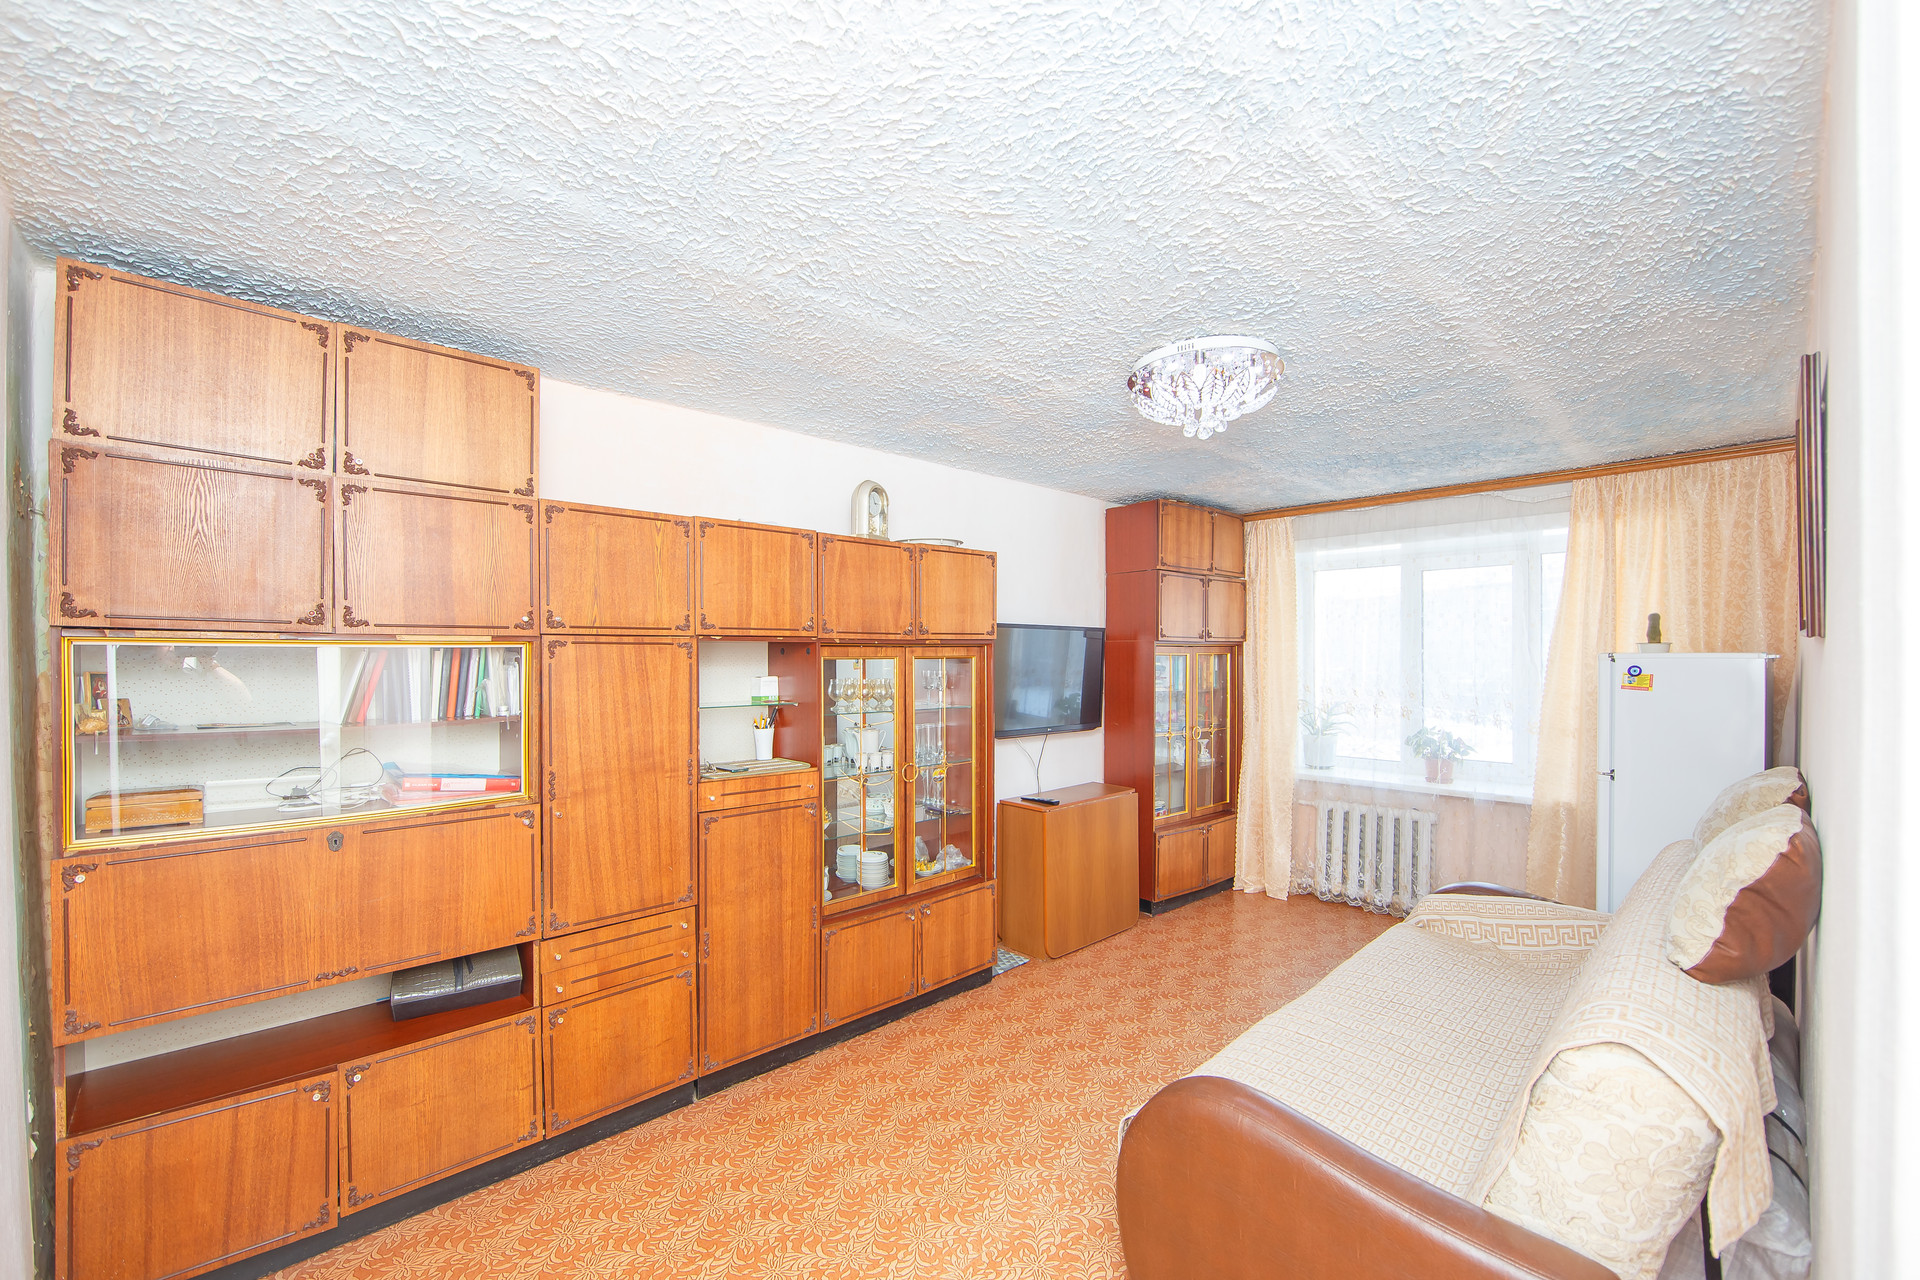 Ворошилова 41. Купить квартиру в Хабаровске 2 комнатную в Индустриальном районе.